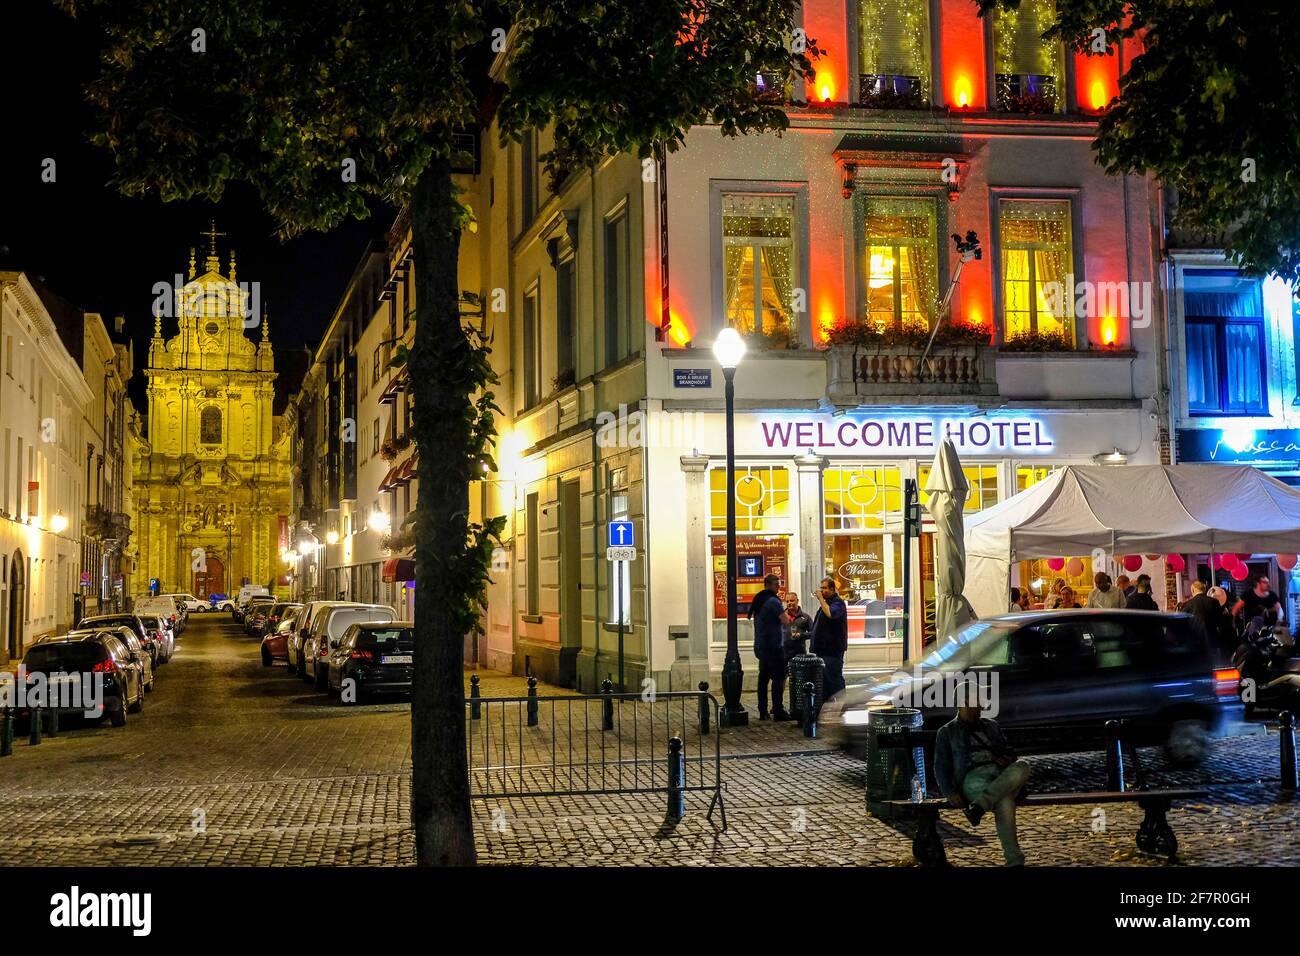 21.09.2019, Bruessel, Belgien - Gaeste trinken Bier am Abend vor einem HotelRestaurant am Quai Au Bois A Bruler im Bereich des ehemaligen Innenstadtha Foto Stock